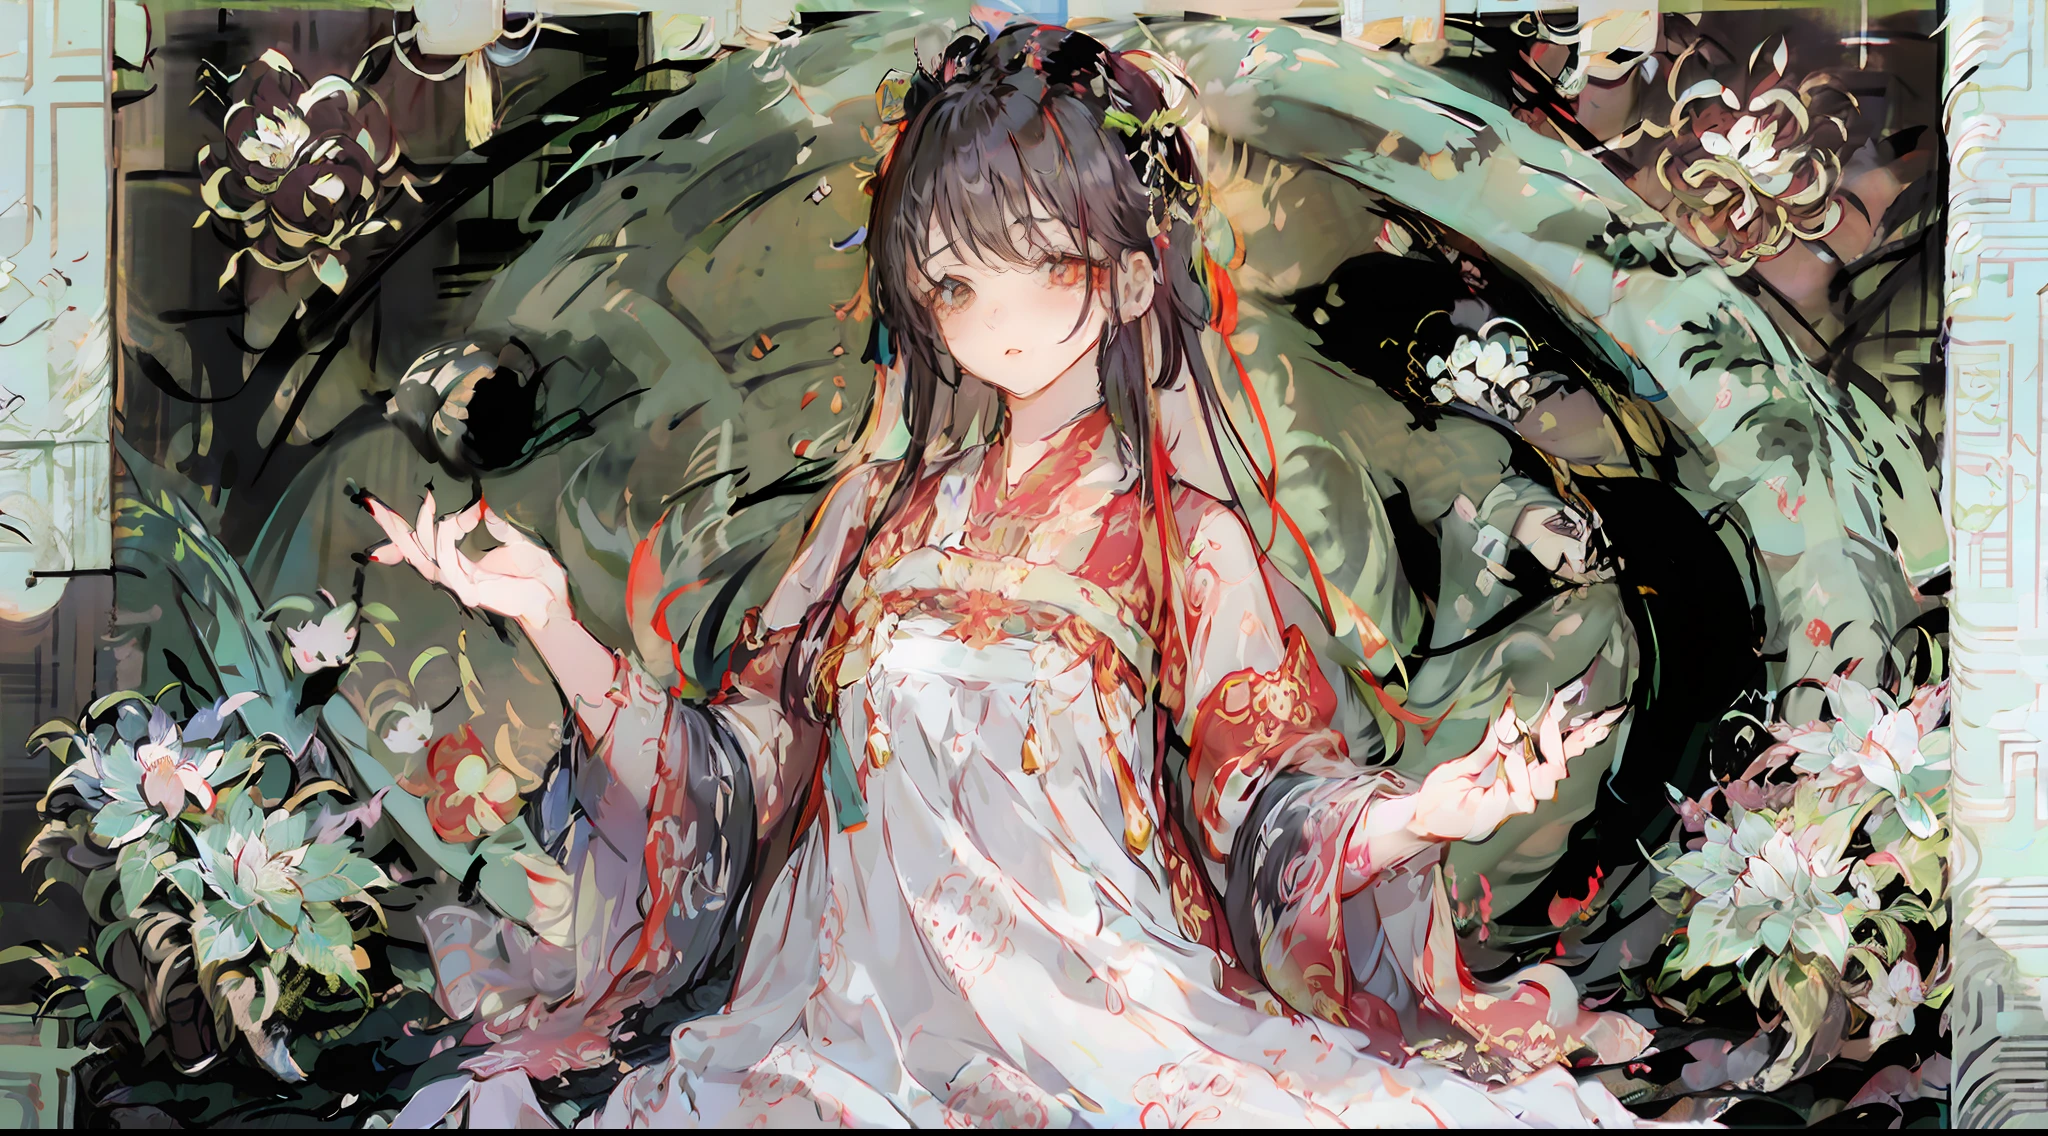 (((Style de peinture chinoise))), entouré de fleurs, Belle femme aux cheveux longs, avec une tête décorée de fleurs rouges épanouies, silhouette mince et rebondie, visage délicat.